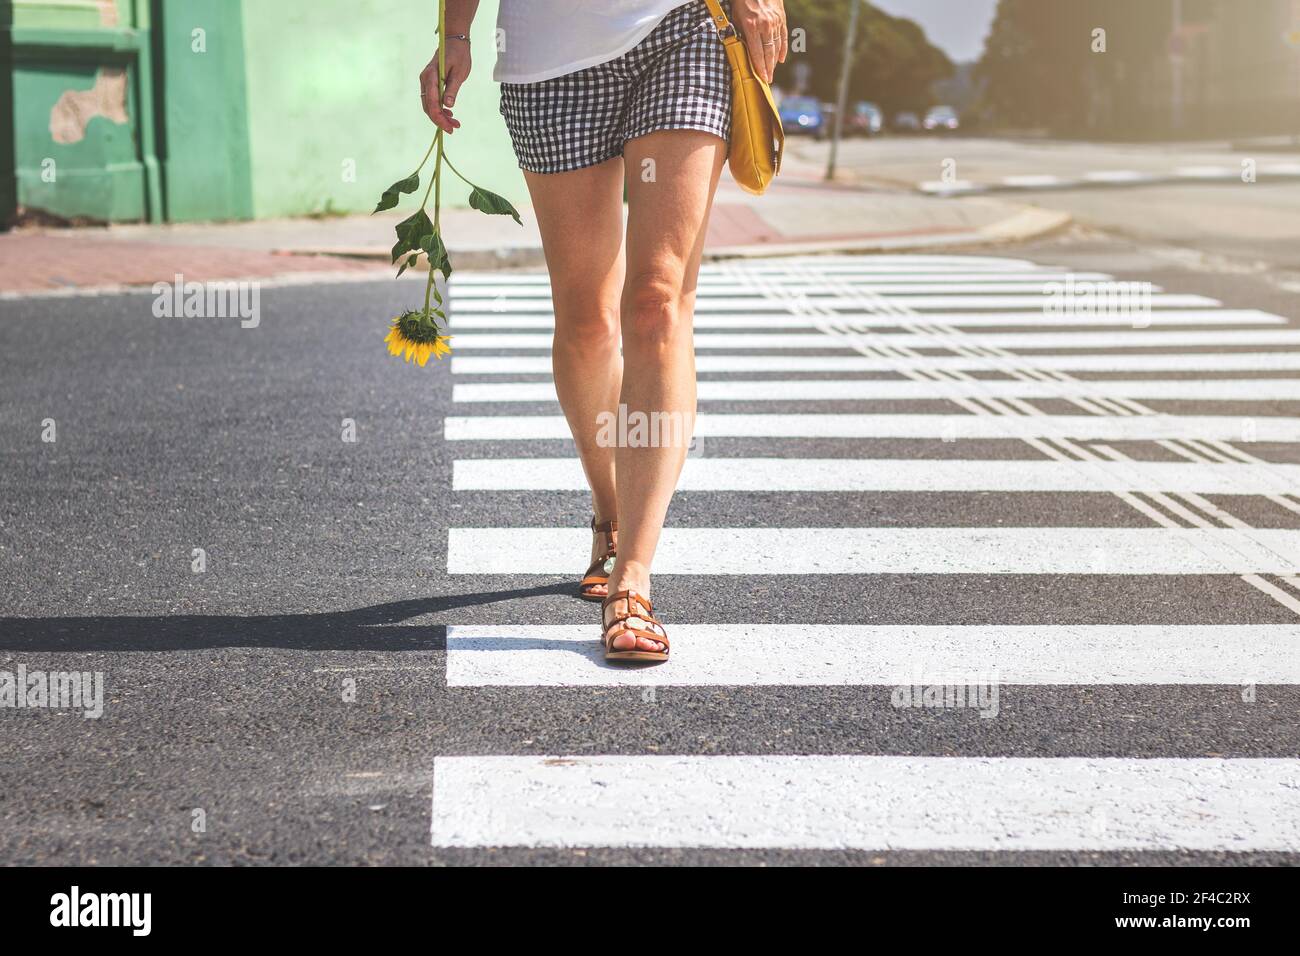 Femme traversant la rue à un passage en croix, l'été en ville. Les jambes  de la jeune femme portant un short et des sandales traversent la rue sur le  marquage zébré Photo